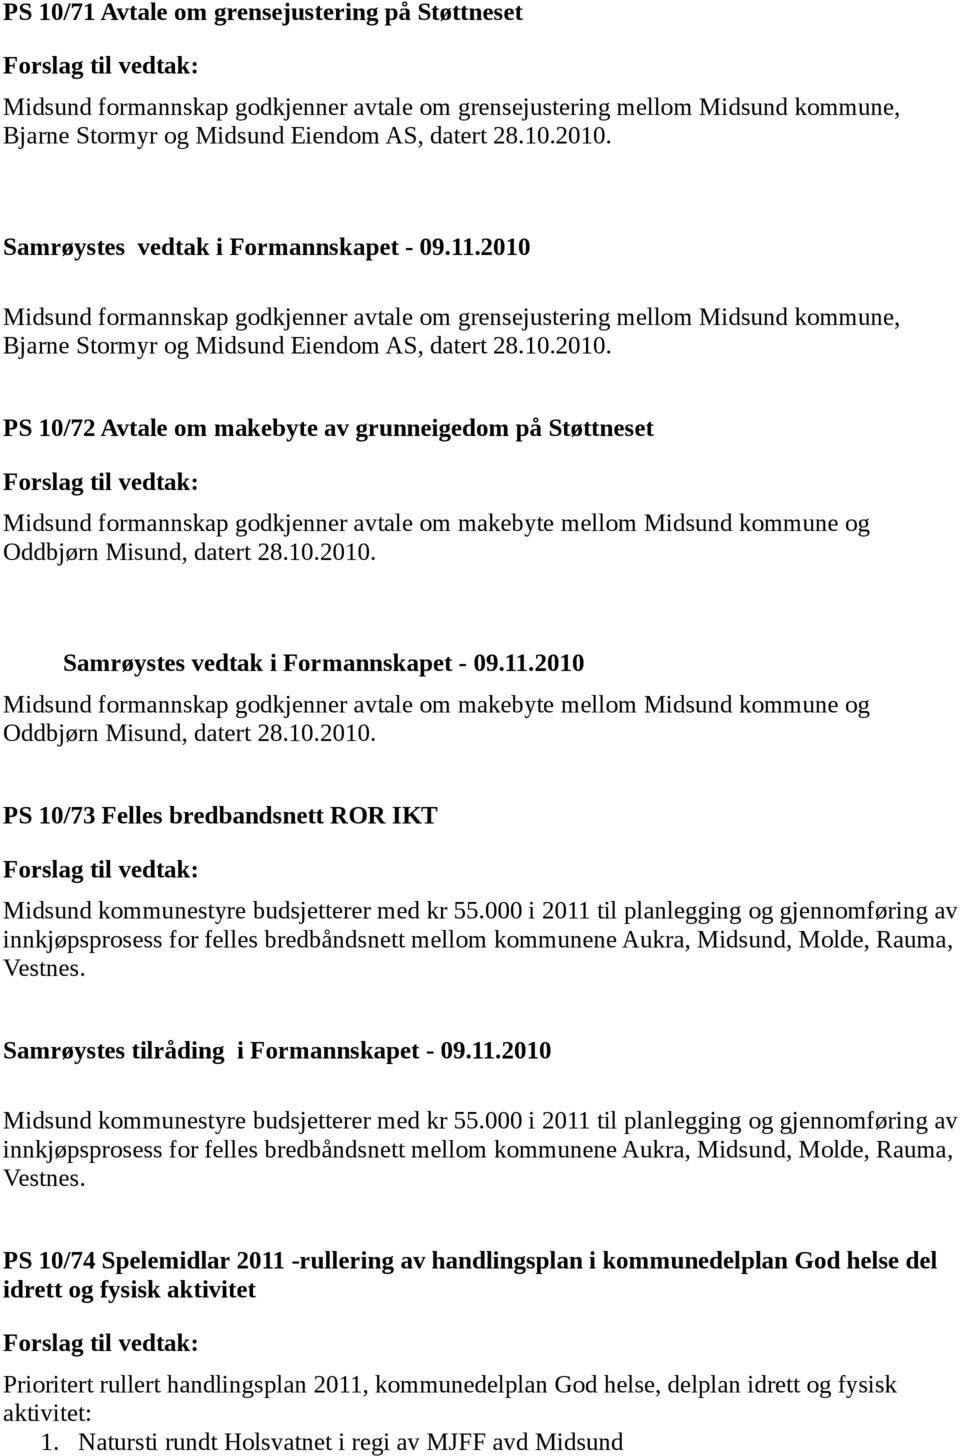 PS 10/72 Avtale om makebyte av grunneigedom på Støttneset Midsund formannskap godkjenner avtale om makebyte mellom Midsund kommune og Oddbjørn Misund, datert 28.10.2010.